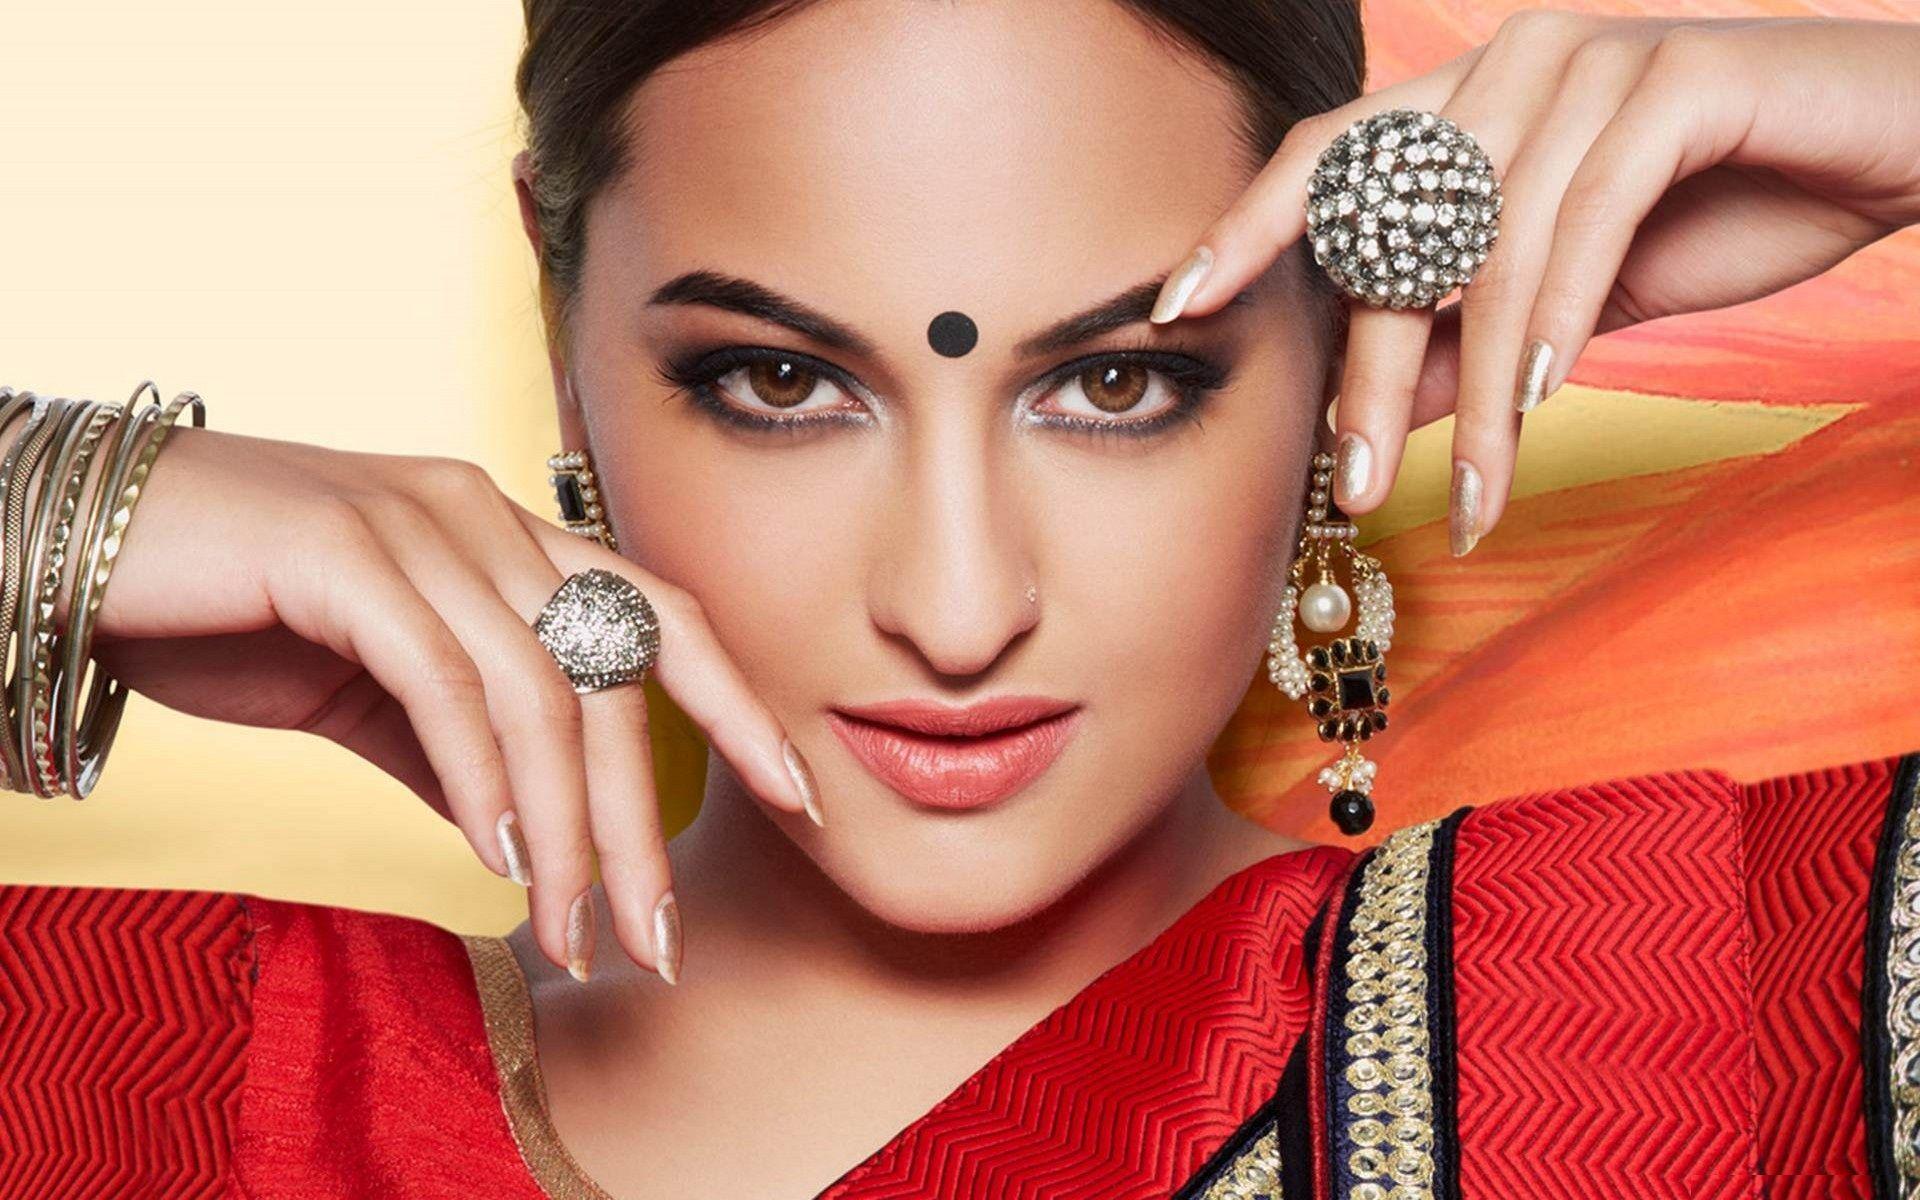 Hot Bollywood Actress Sonakshi sinha HD Wallpaper 1080p. Sonakshi